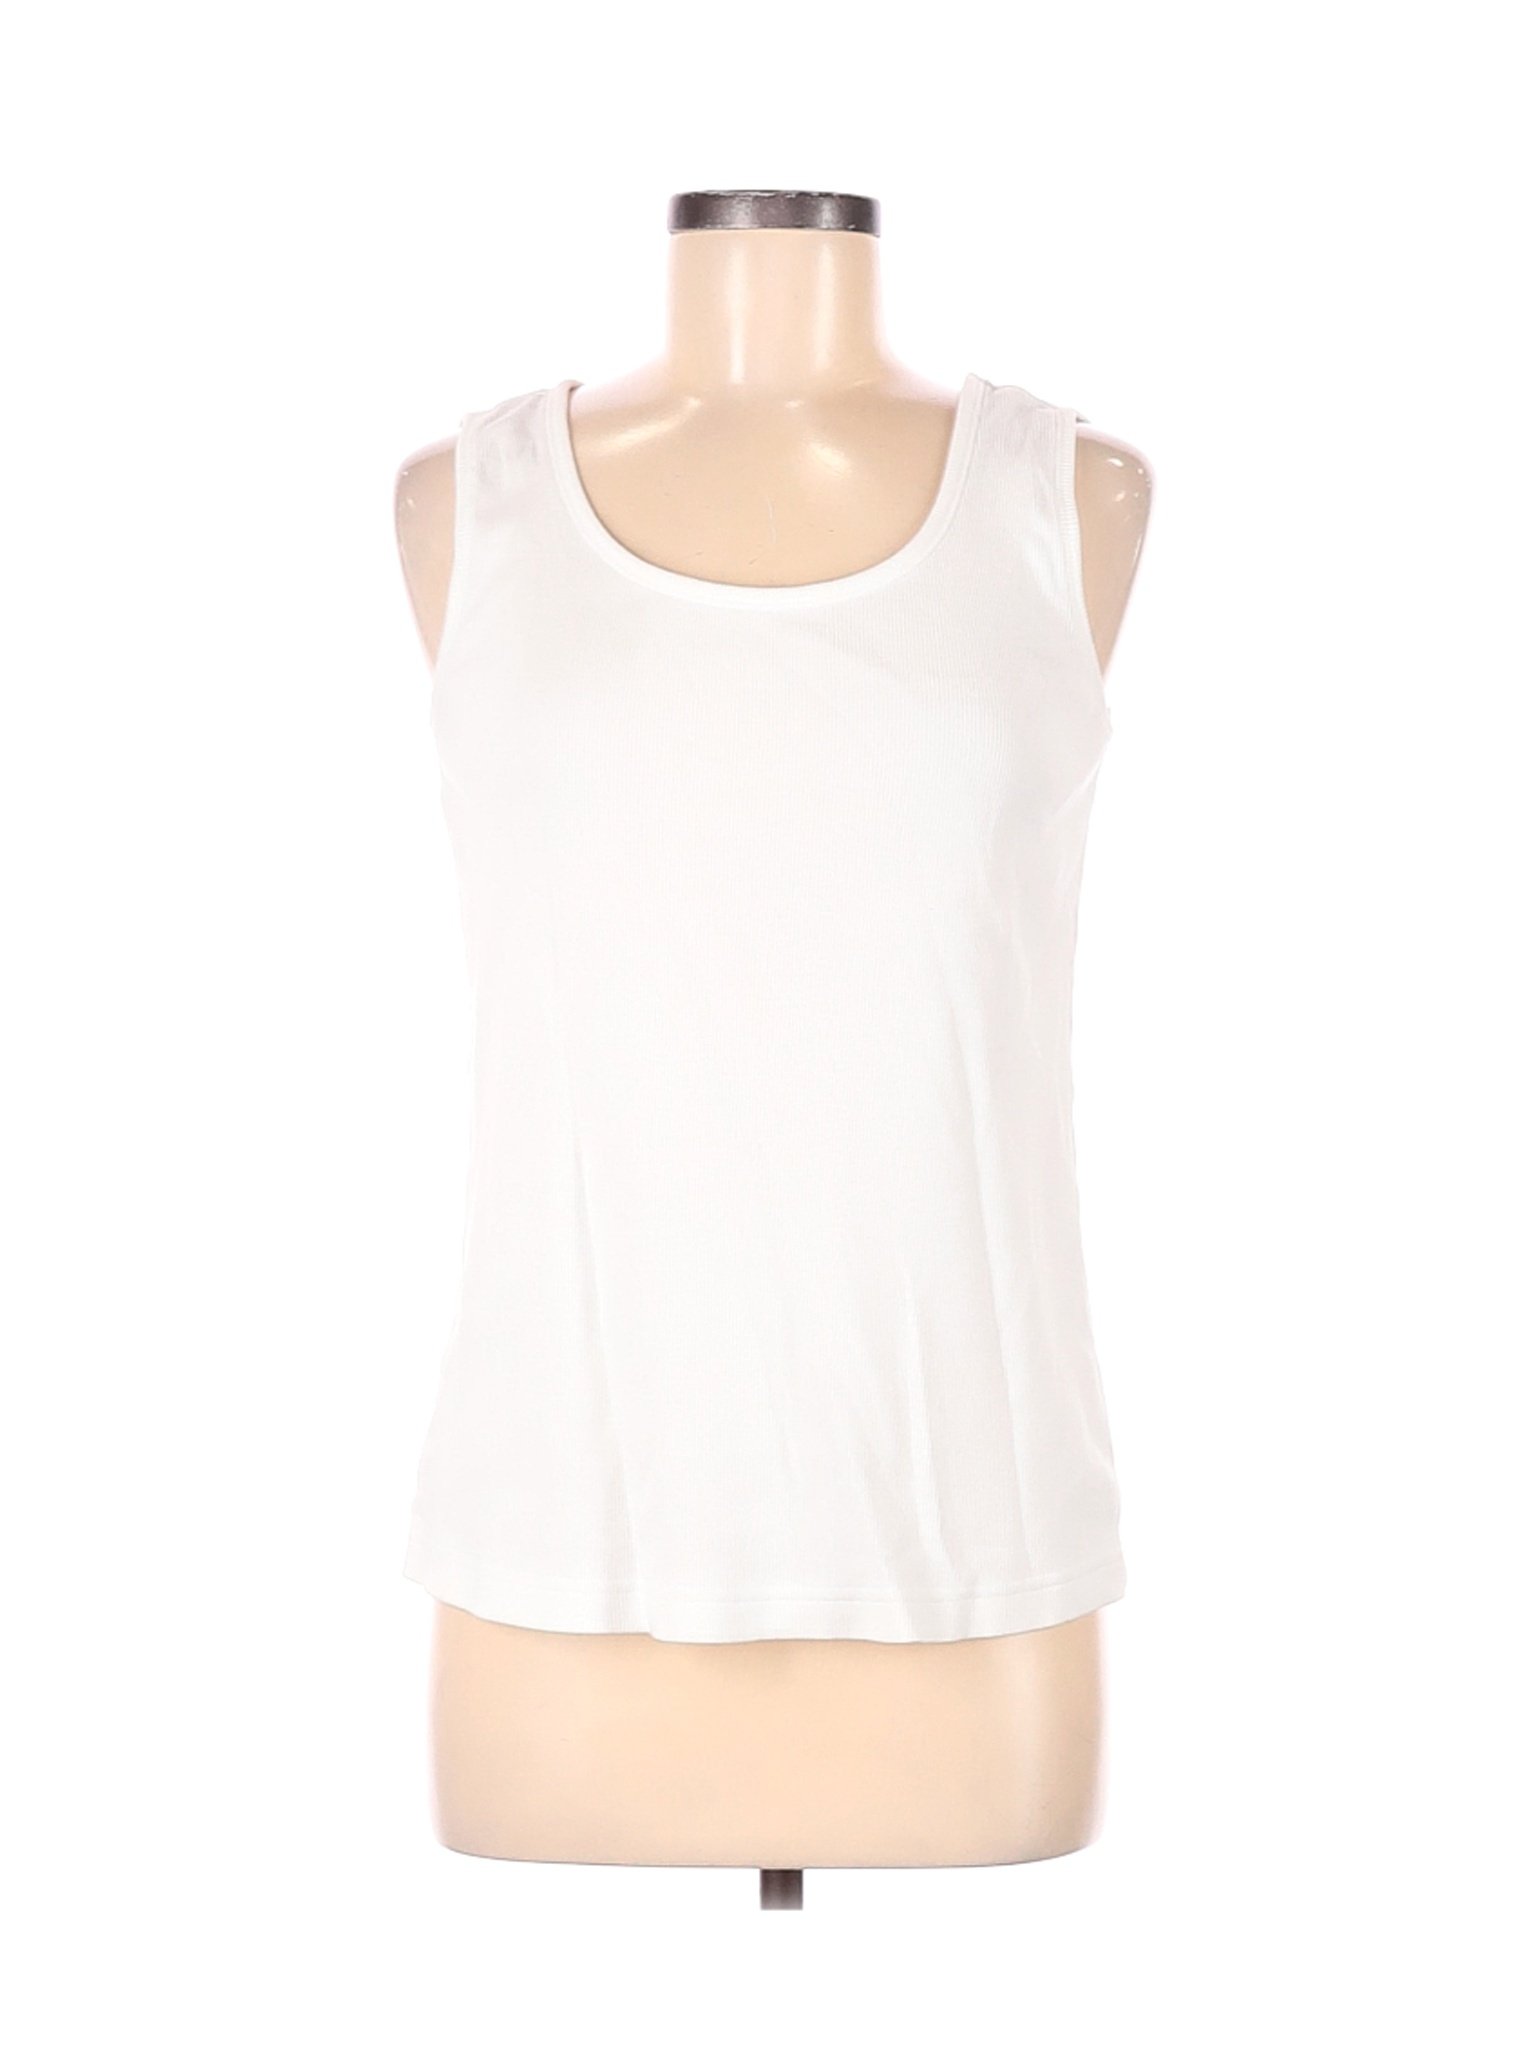 Chico's Women White Sleeveless T-Shirt M | eBay